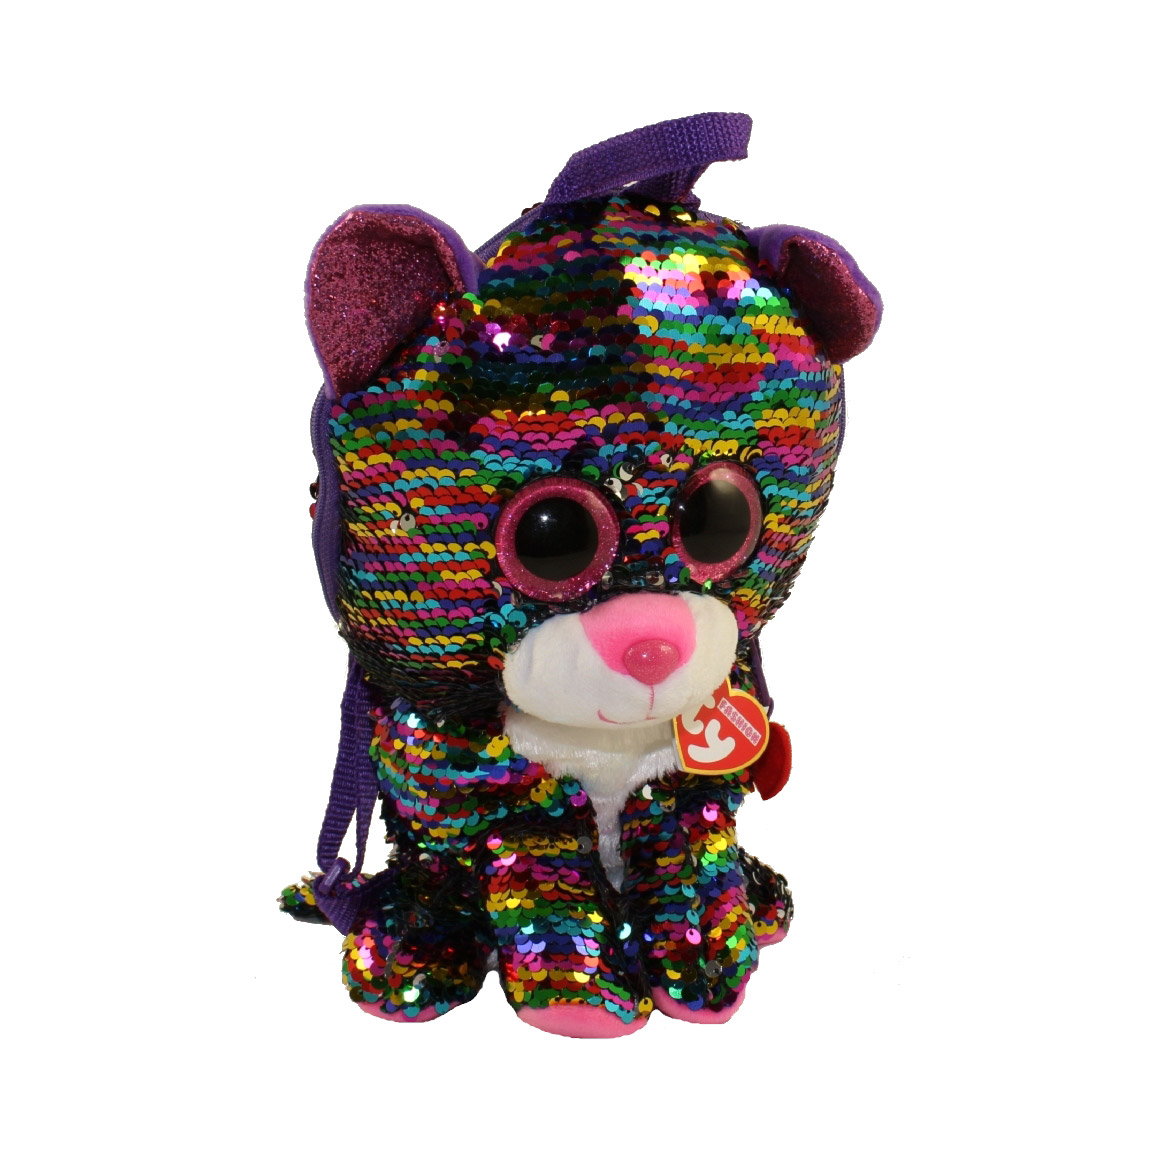 Рюкзак TY игрушка Дотти леопард многоцветный с пайетками